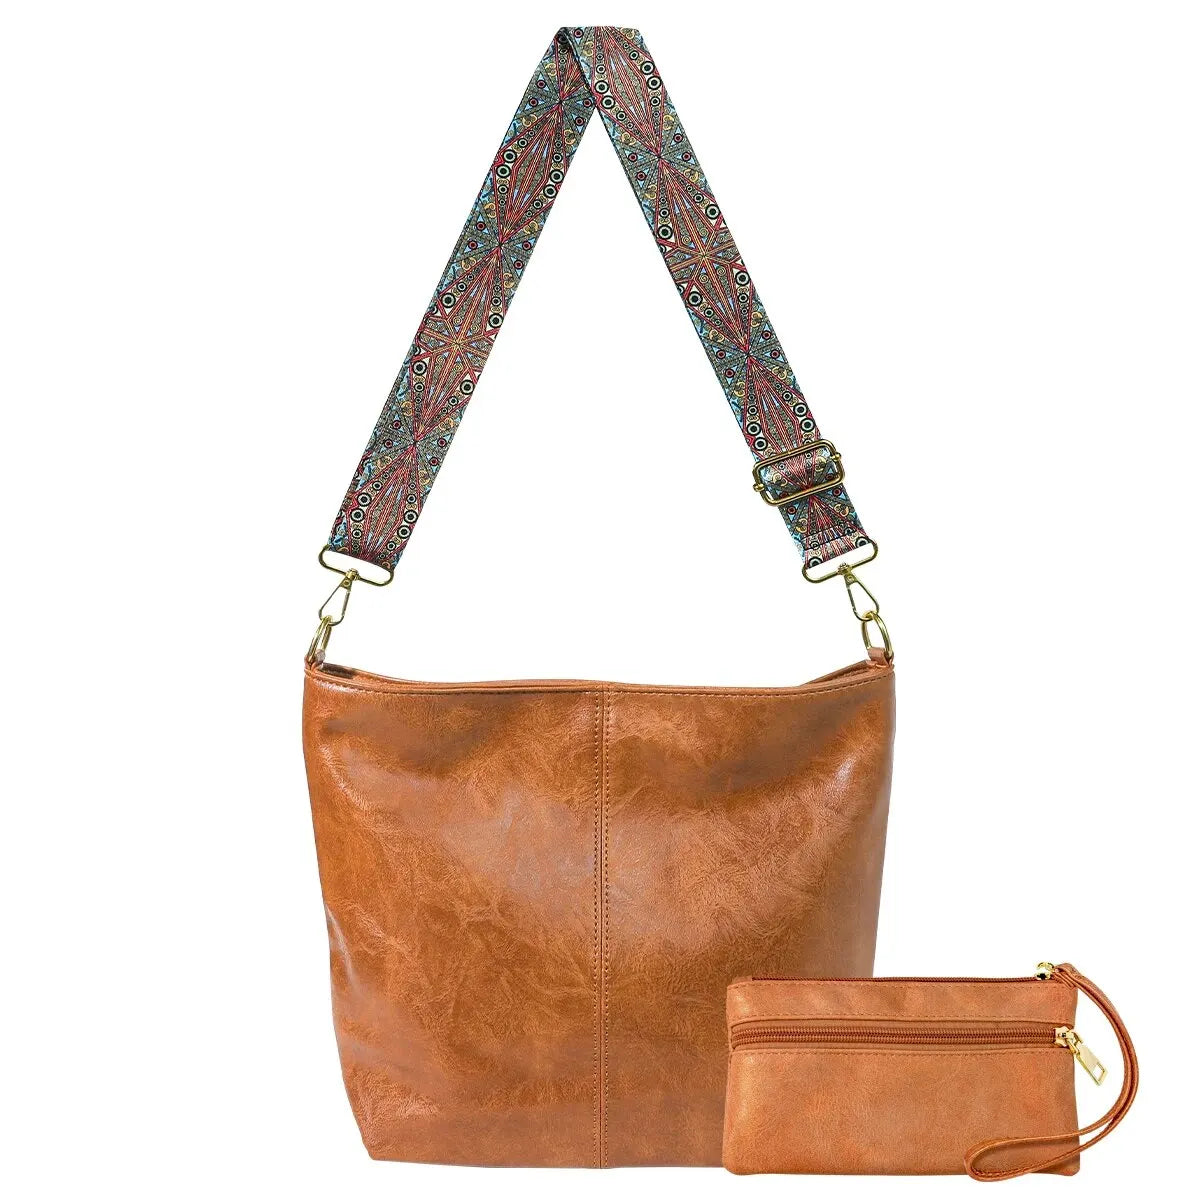 2PCS/Set Vintage Crossbody Bag with Purse Wide Bag Strap Hobo Bag Women Large Capacity Shoulder Bag for Work School Handbag